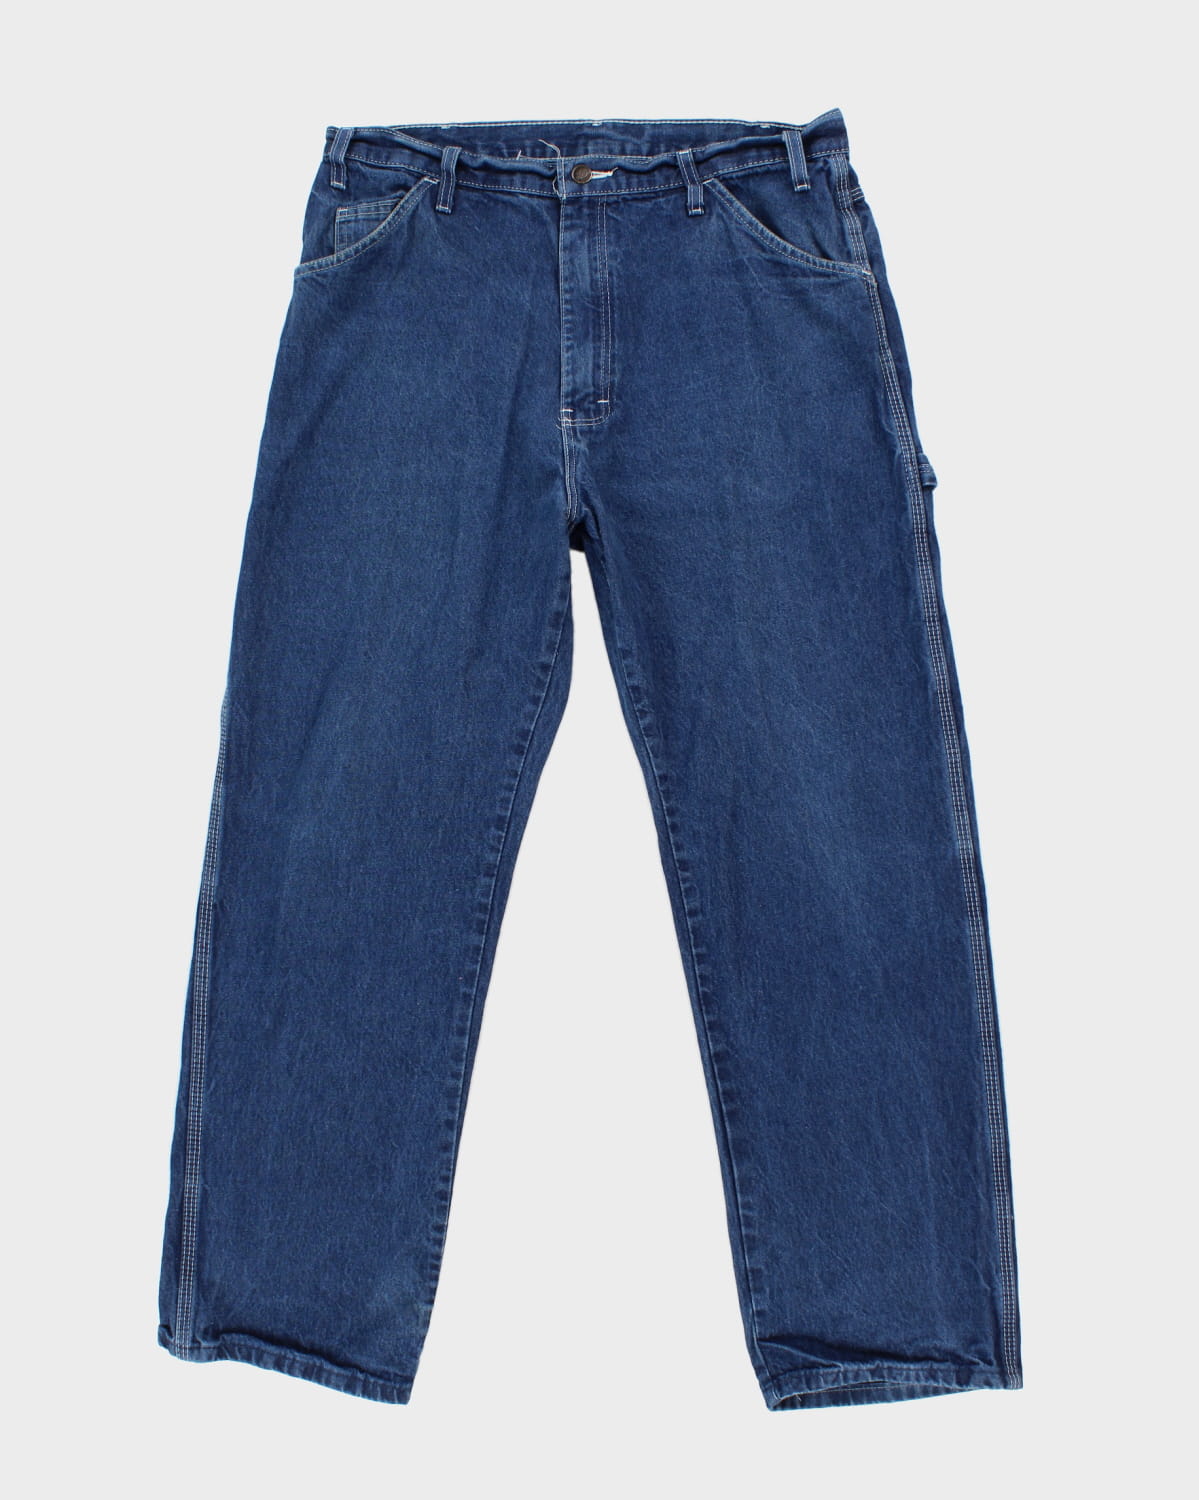 Dickies Dark Wash Carpenter Jeans - W36 L30